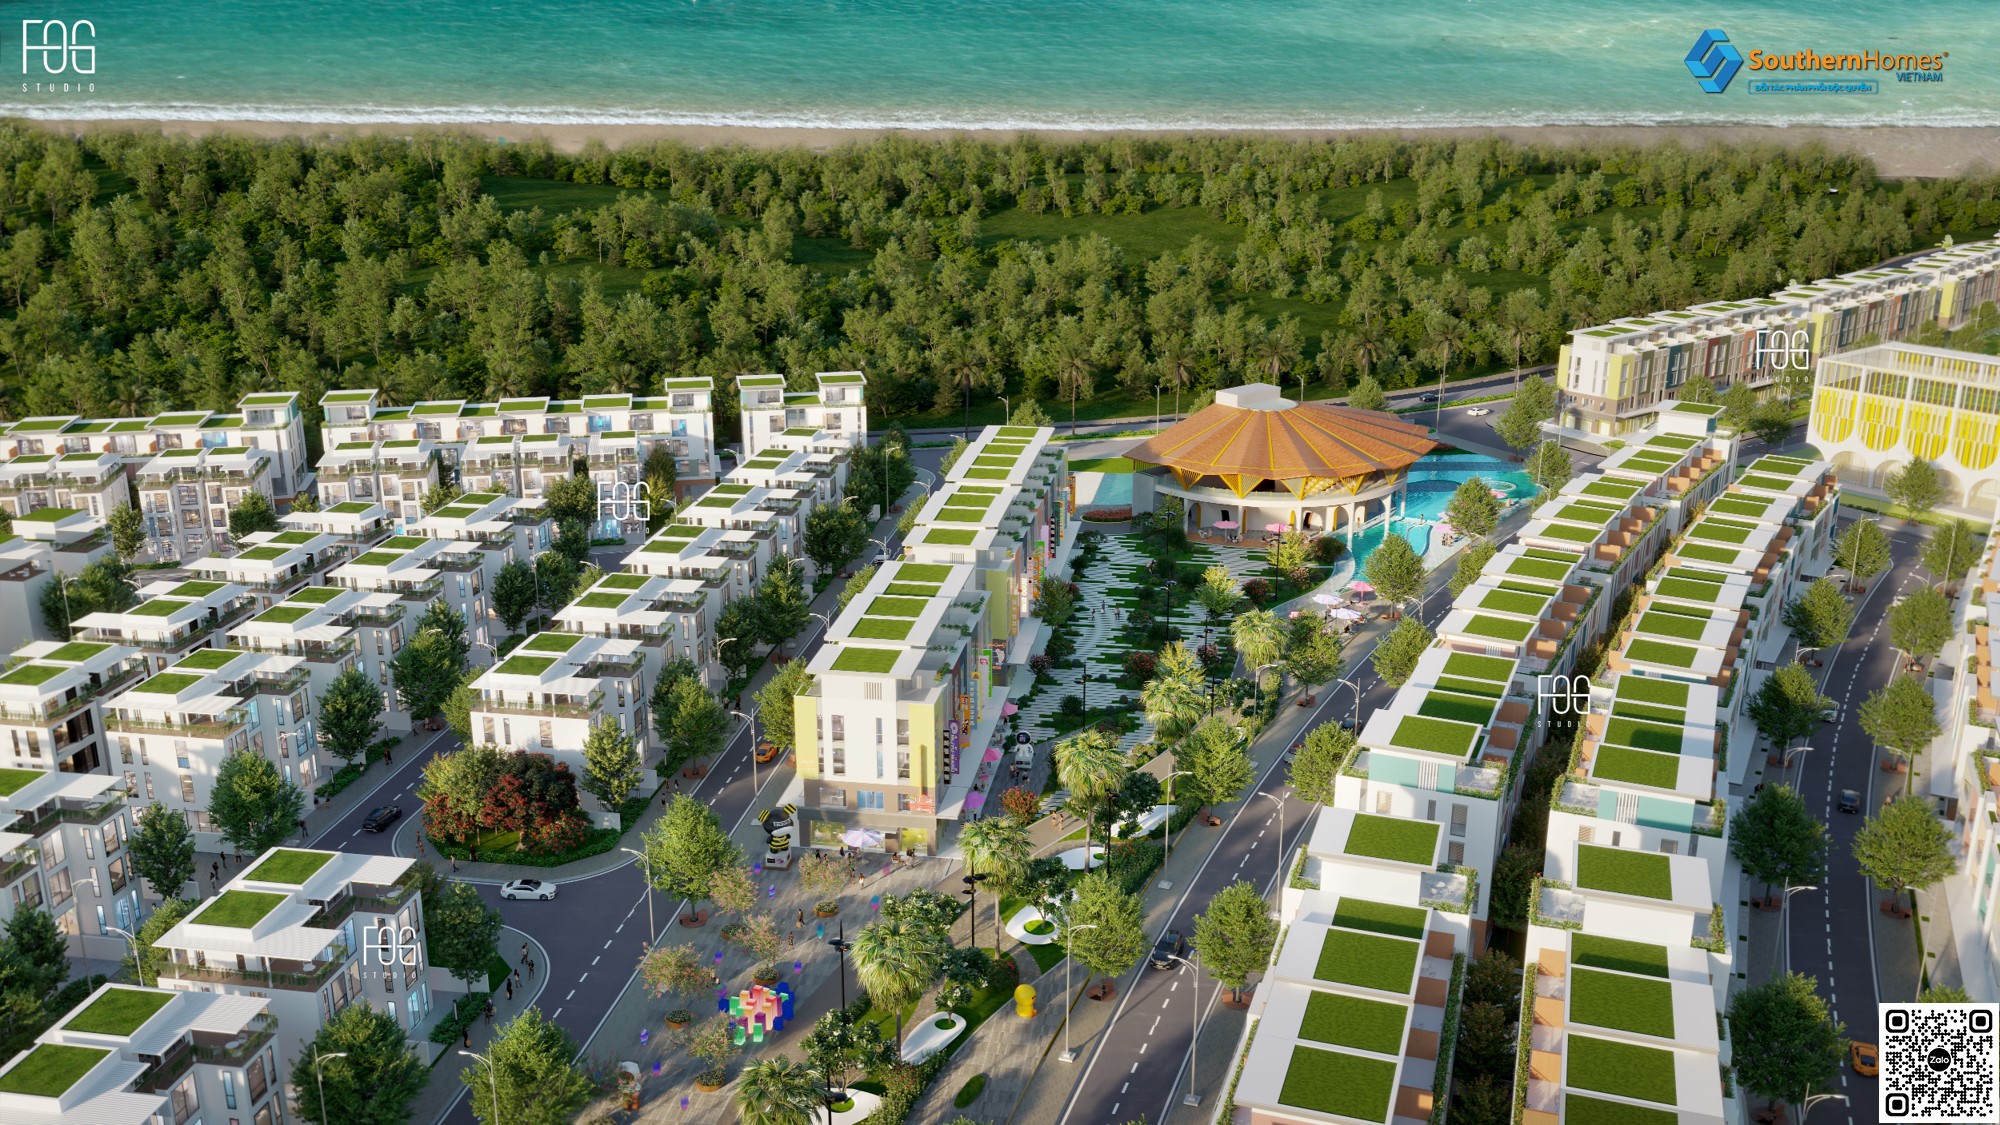 Tiện ích dự án nhà phố thương mại The Koradise Meyhomes Phú Quốc Trần Hưng Đạo chủ đầu tư Tân Á Đại Thành 